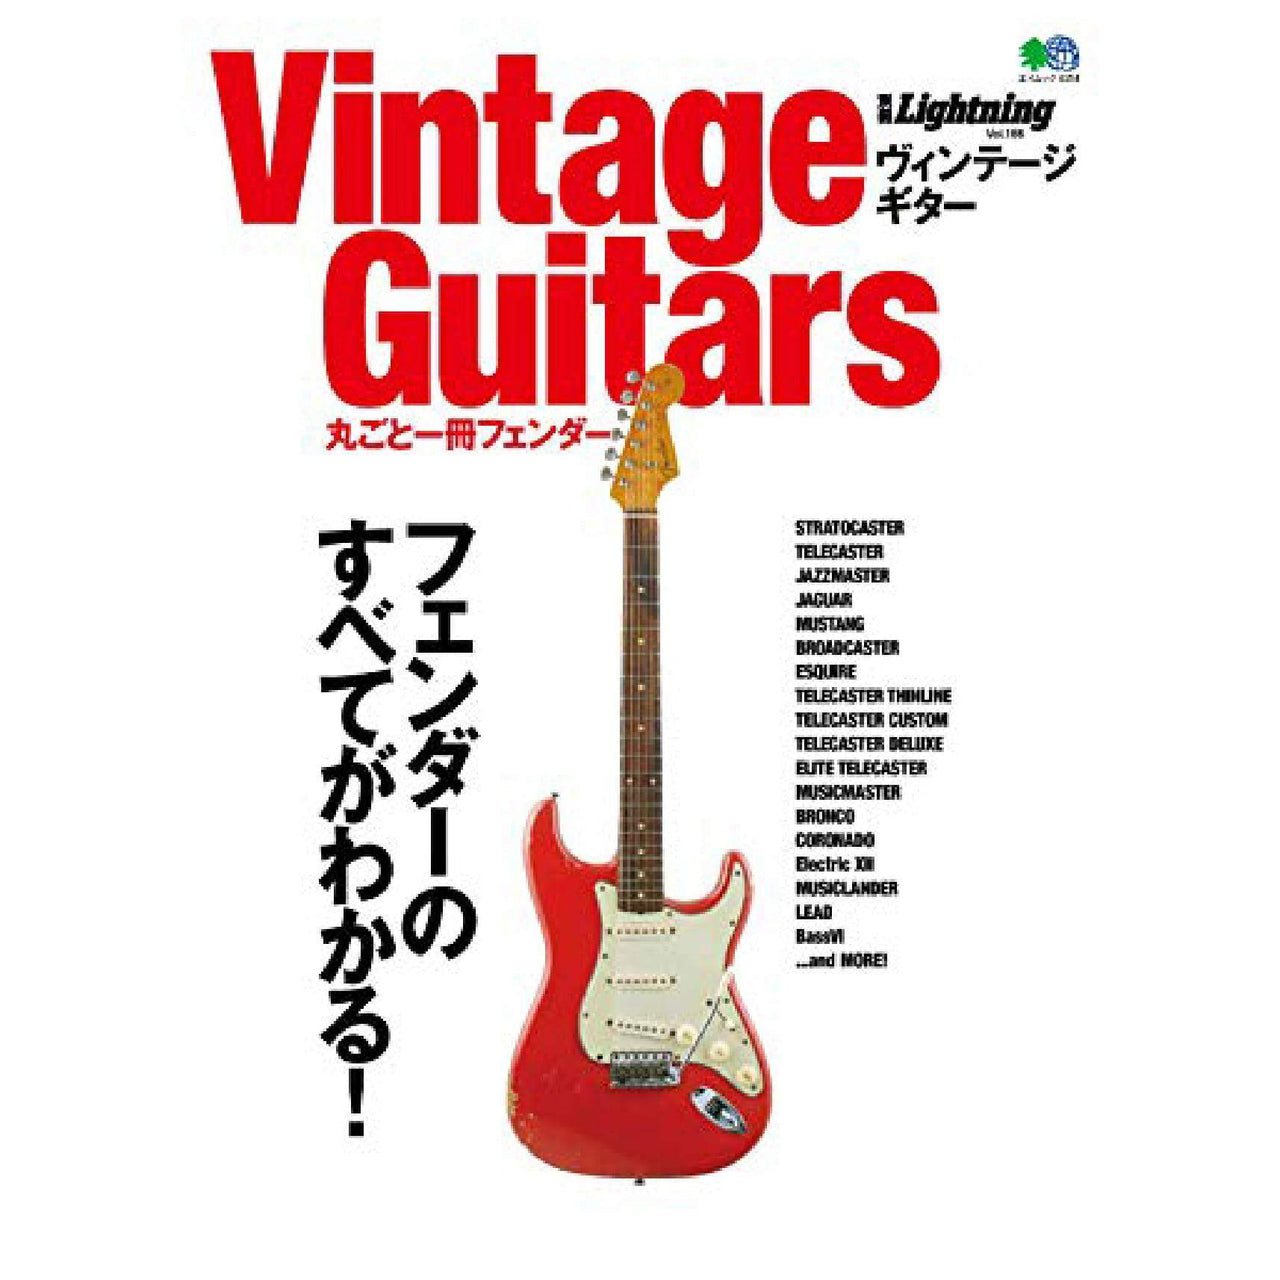 Lightning Archives Vol.186 "Vintage Guitars Fender"-Magazine-Clutch Cafe